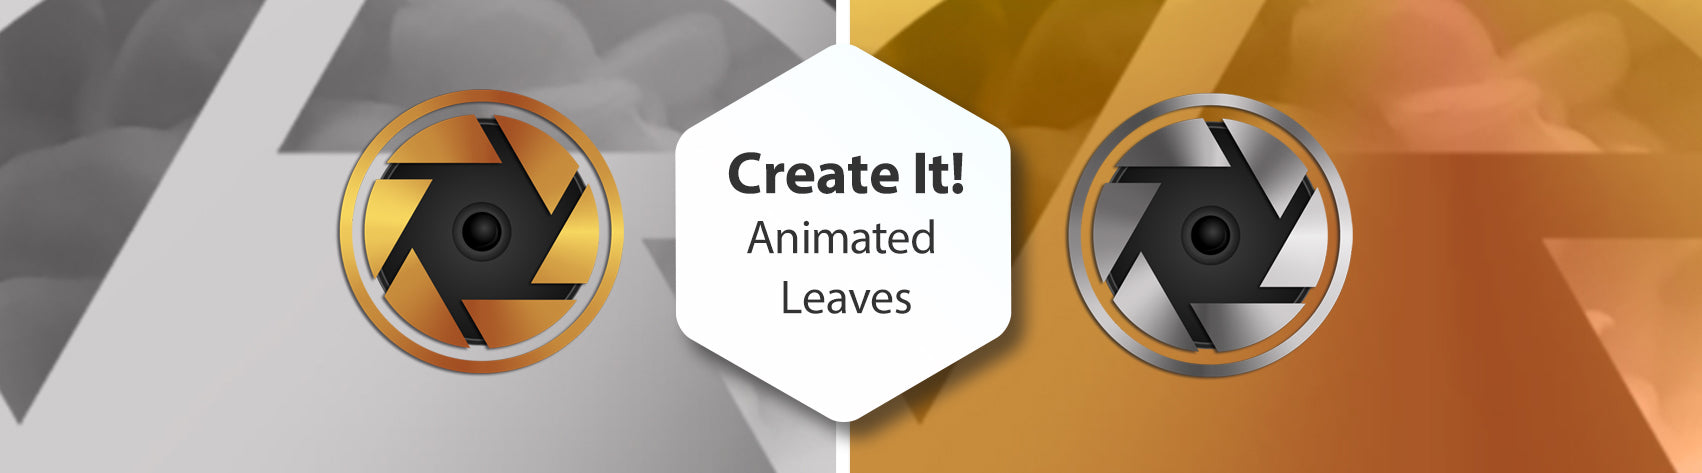 Create It! Animated Leaves